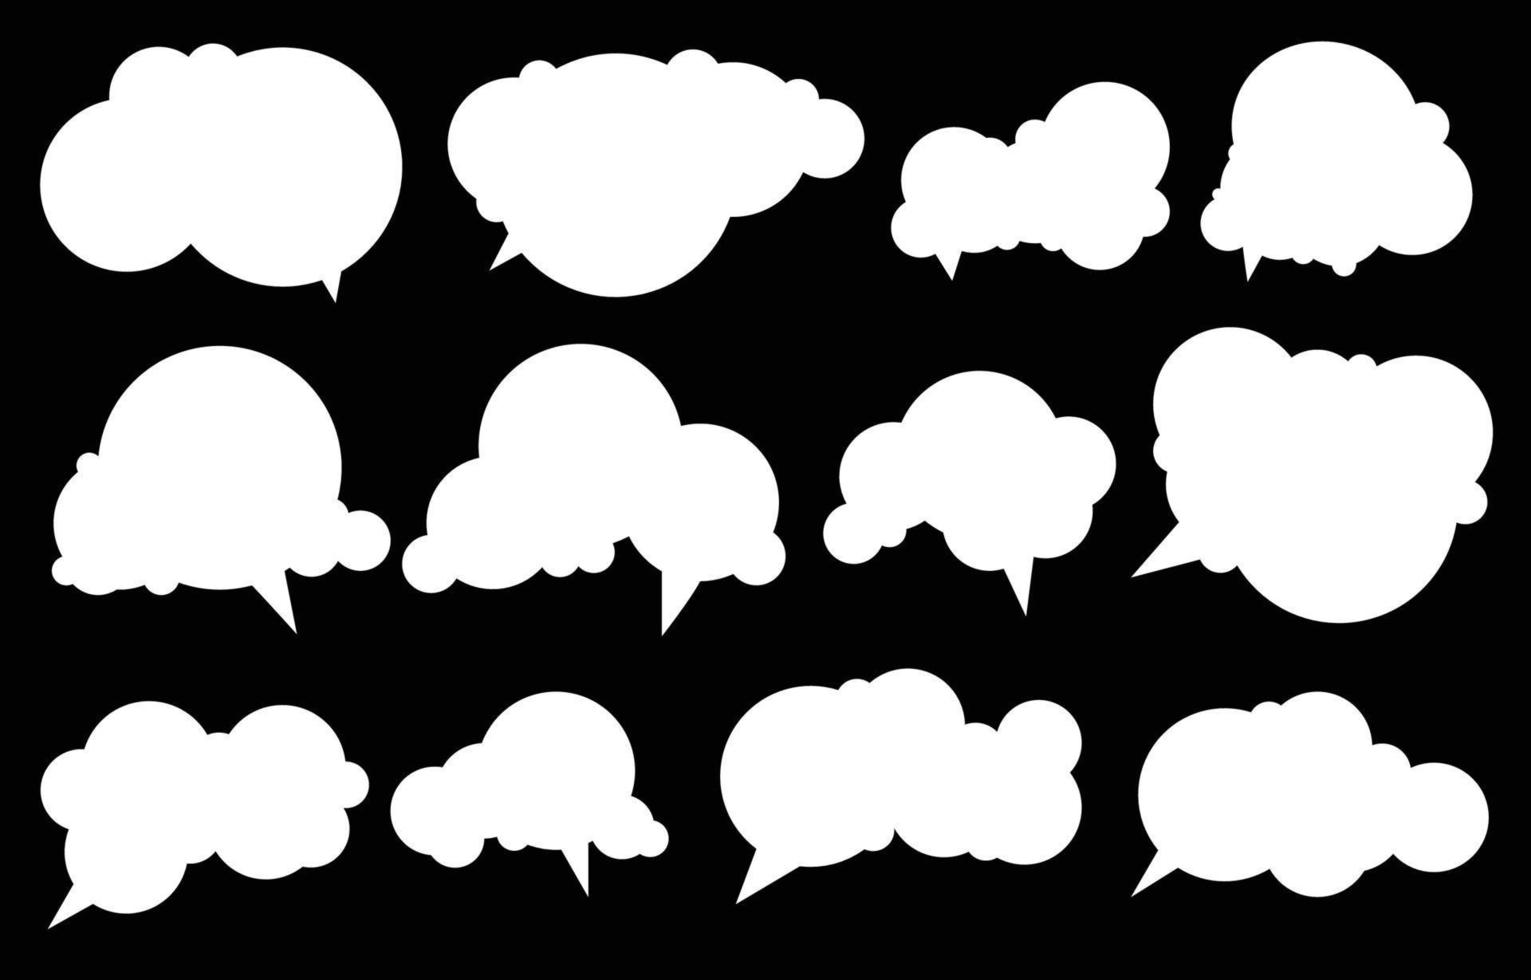 Stellen Sie Sprechblasen auf schwarzem Hintergrund ein. Chat-Box oder Chat-Vektorquadrat und Doodle-Nachricht oder Kommunikationssymbolwolke, die für Comics und minimalen Nachrichtendialog spricht vektor